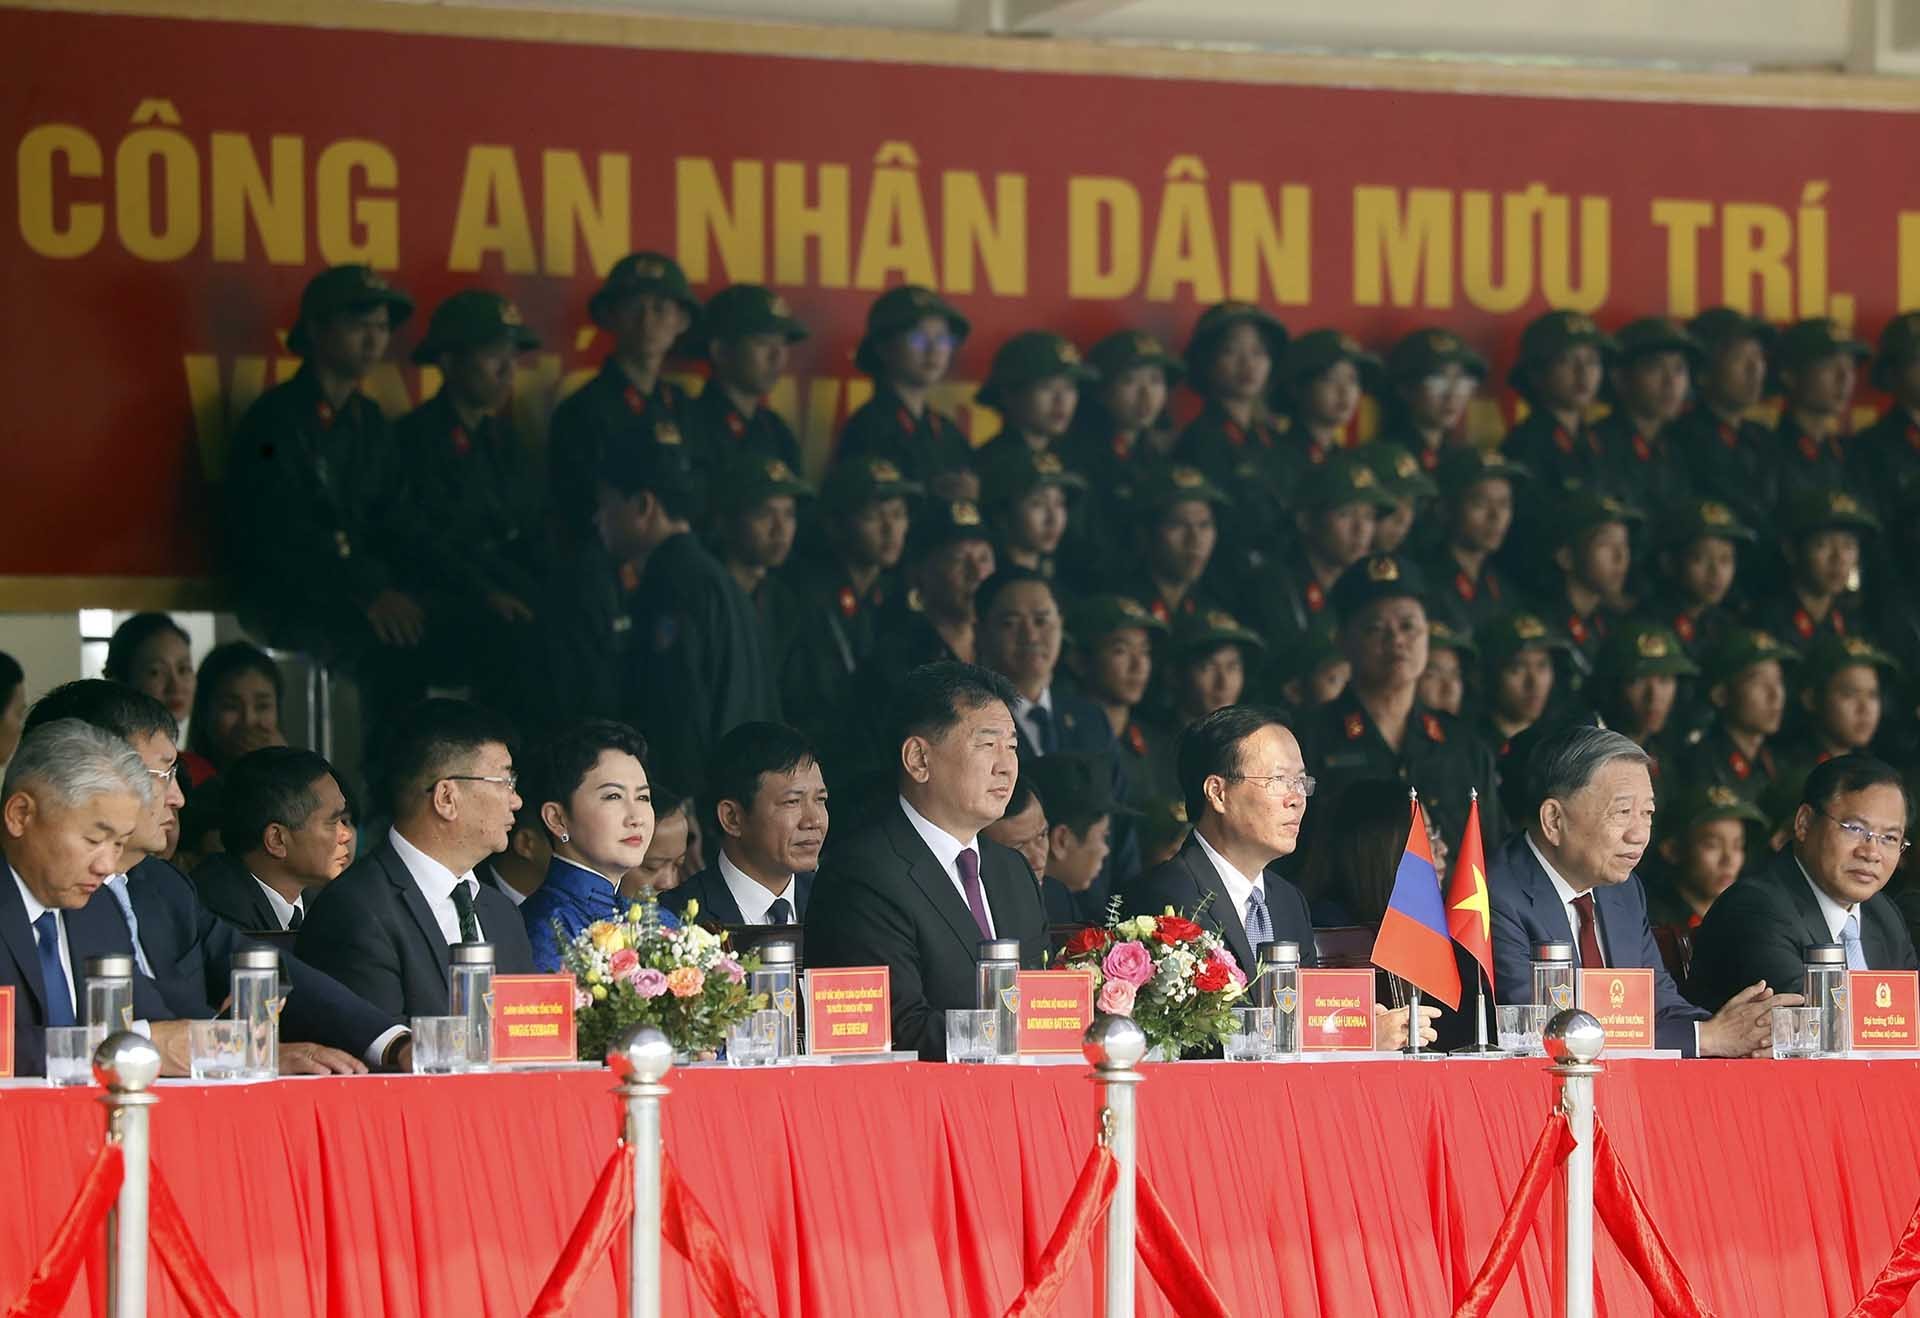 Chủ tịch nước Võ Văn Thưởng và Tổng thống Mông Cổ Ukhnaagiin Khurelsukh và các đại biểu xem các chiến sĩ Cảnh sát cơ động kỵ binh trình diễn võ thuật trên lưng ngựa. (Nguồn: TTXVN)